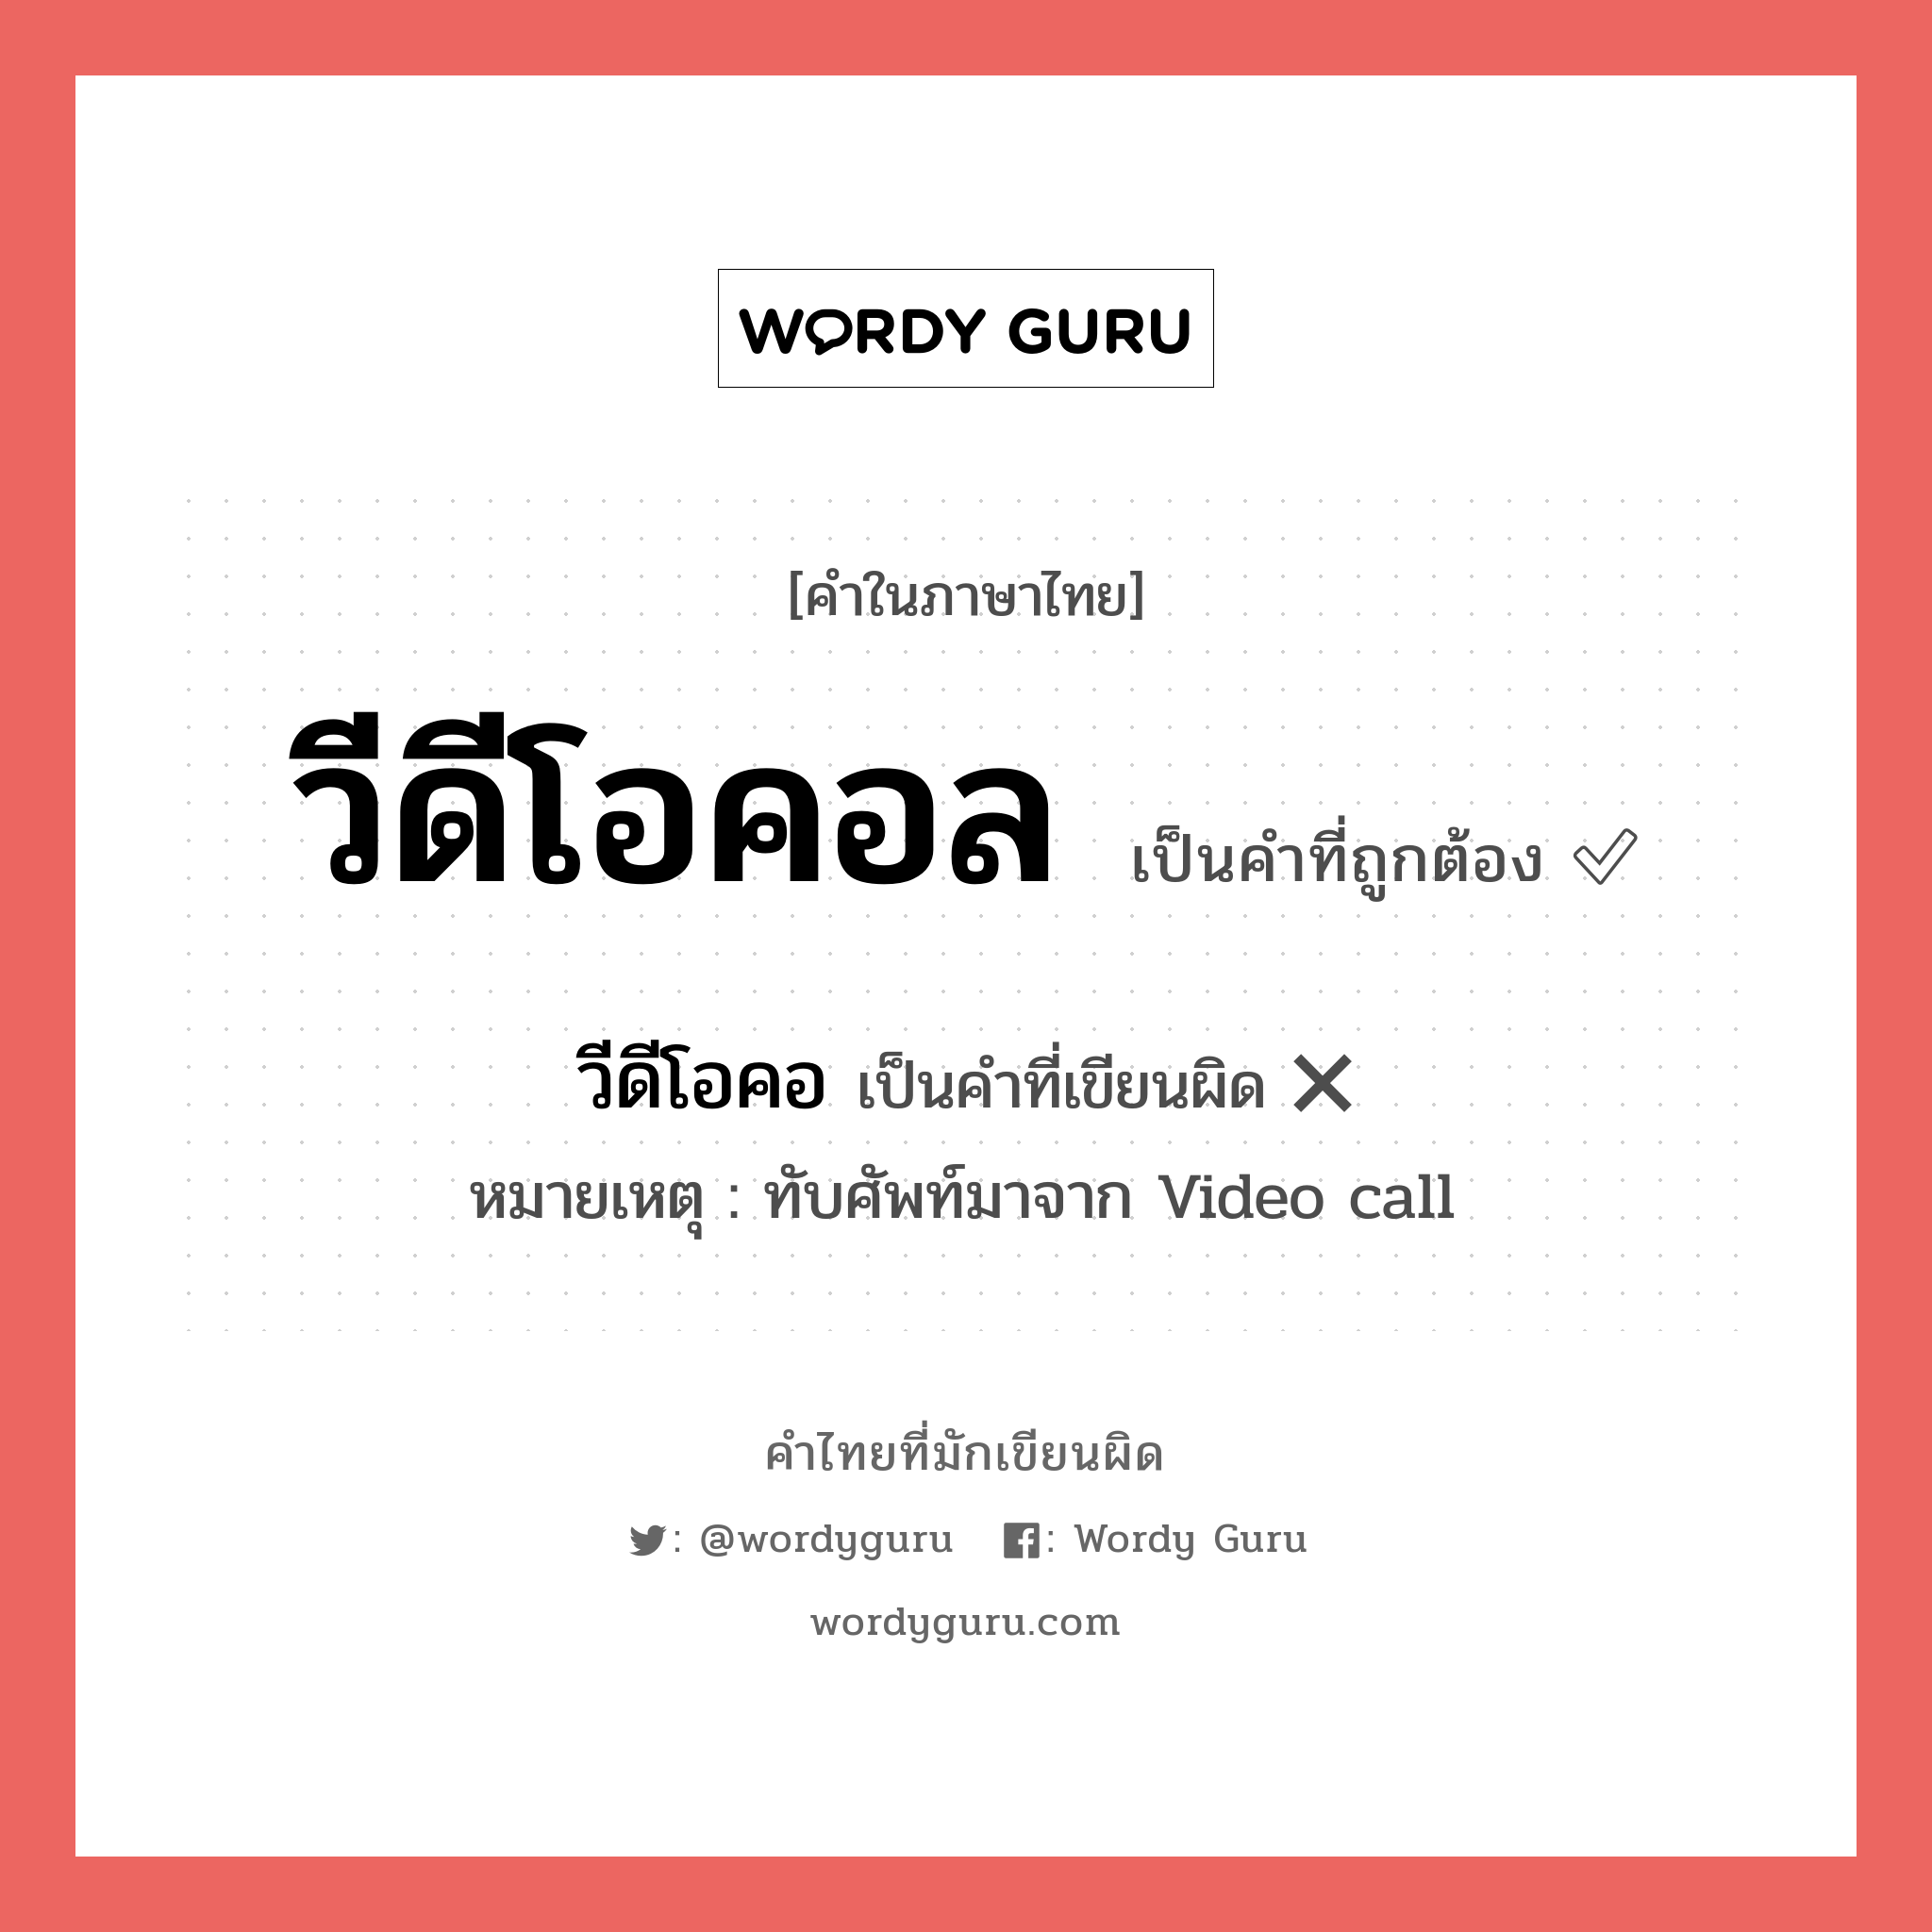 วีดีโอคอล หรือ วีดีโอคลอ เขียนยังไง? คำไหนเขียนถูก?, คำในภาษาไทยที่มักเขียนผิด วีดีโอคอล คำที่ผิด ❌ วีดีโอคอ หมายเหตุ ทับศัพท์มาจาก Video call หมวด การติดต่อสื่อสาร หมวด การติดต่อสื่อสาร